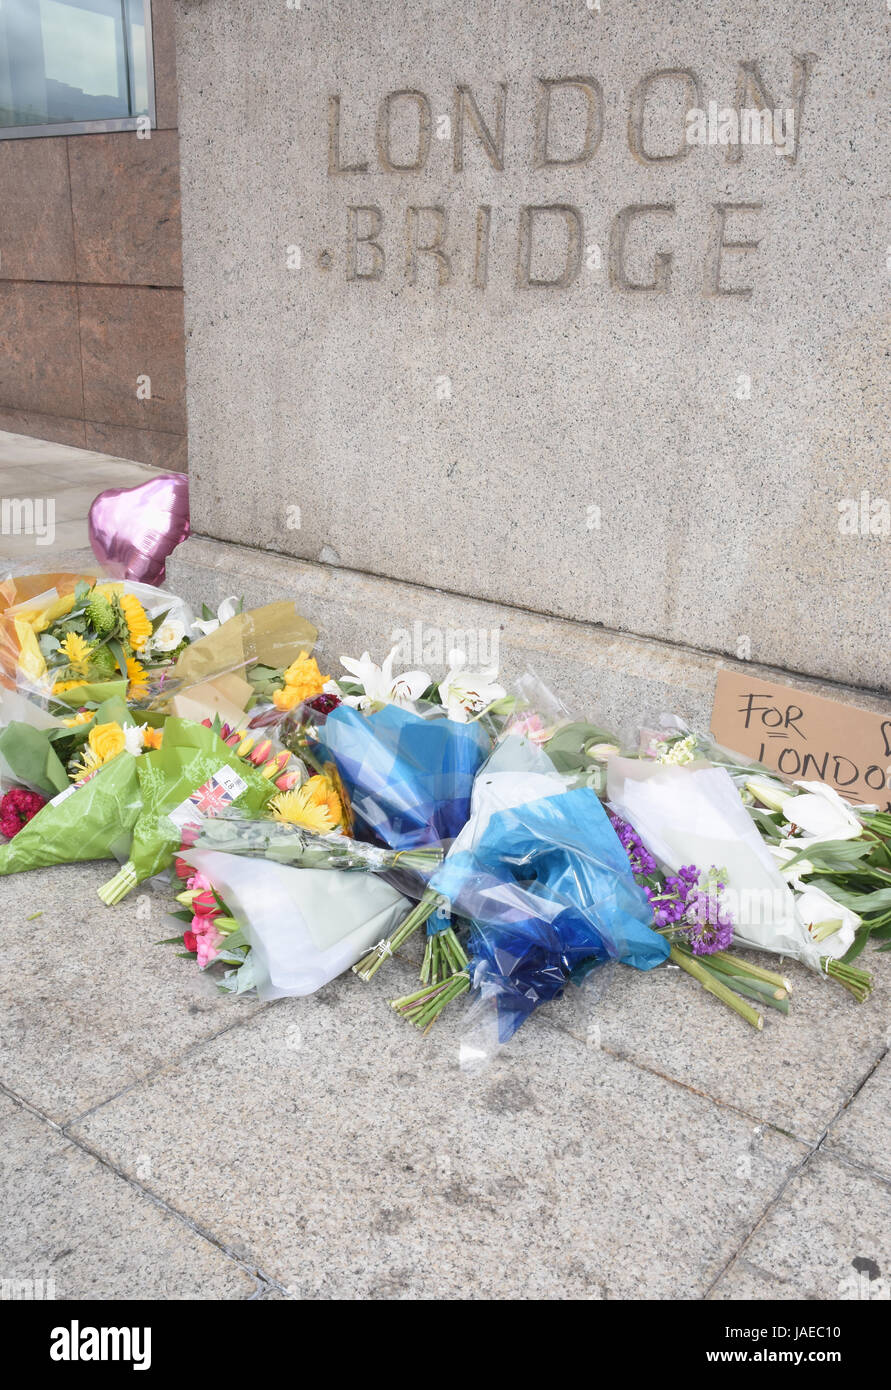 Omaggi floreali a sinistra a un ripiego memorial, Londra attacco terroristico 03.06.17, London Bridge, Londra. Regno Unito 05.06.17 Foto Stock